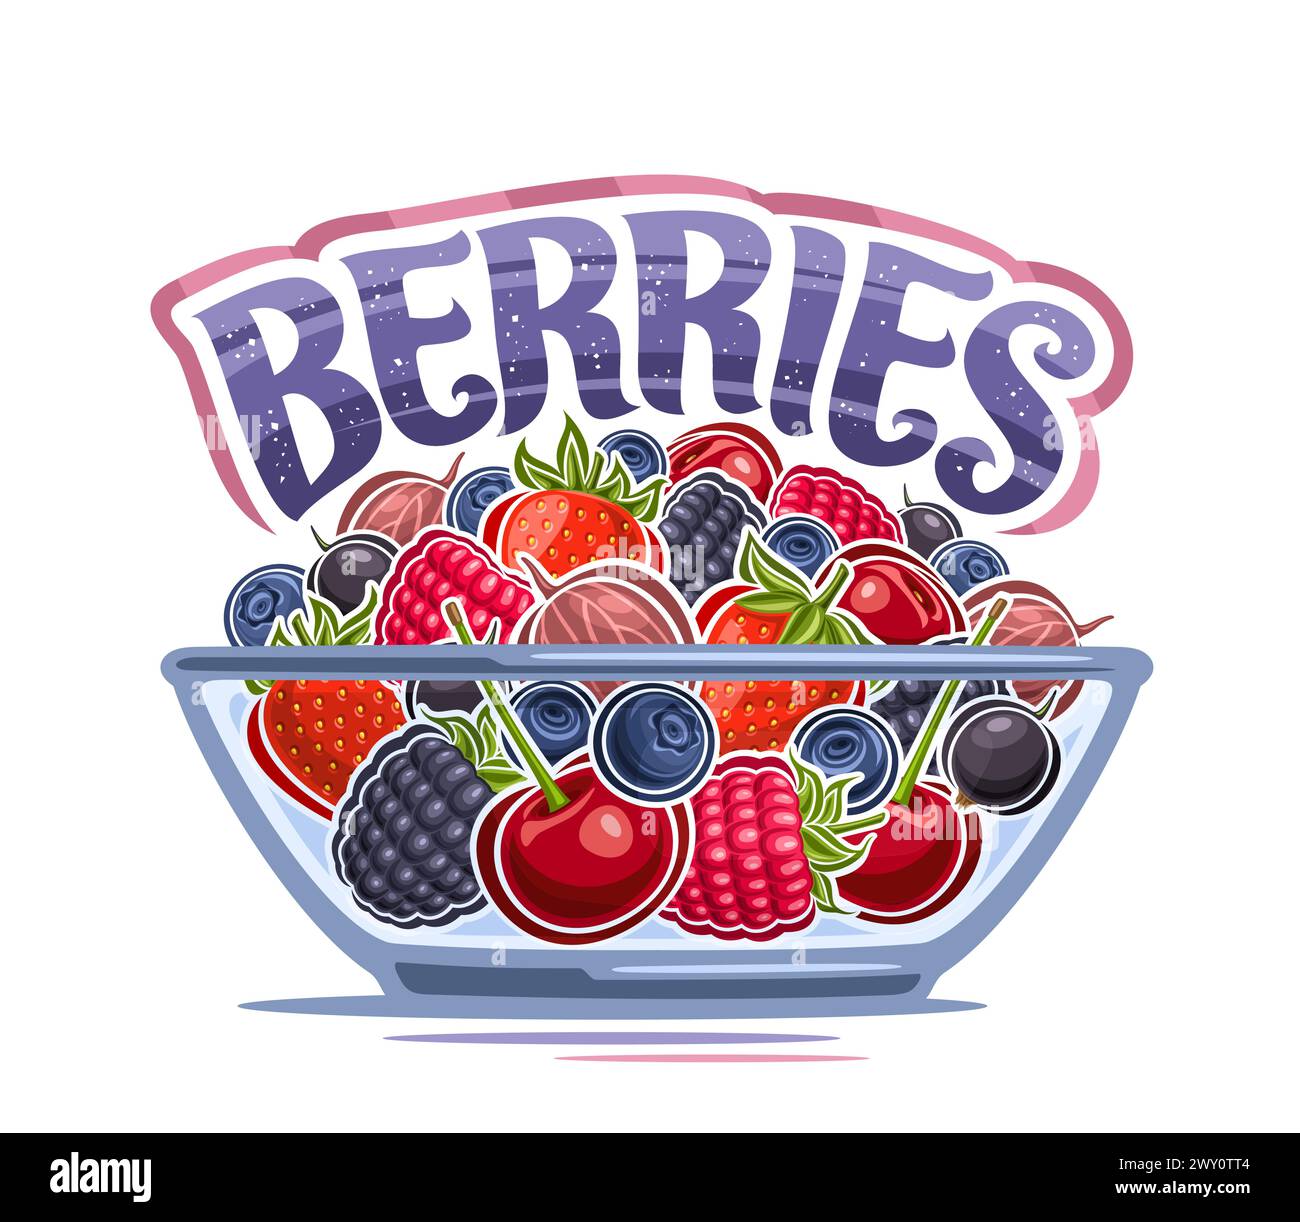 Vector Berry Bowl, dekoratives Poster mit isoliertem Zeichentrickdesign Beeren Komposition mit grünen Blättern und Stielen, Umrissillustration der Beerenfrucht Stock Vektor